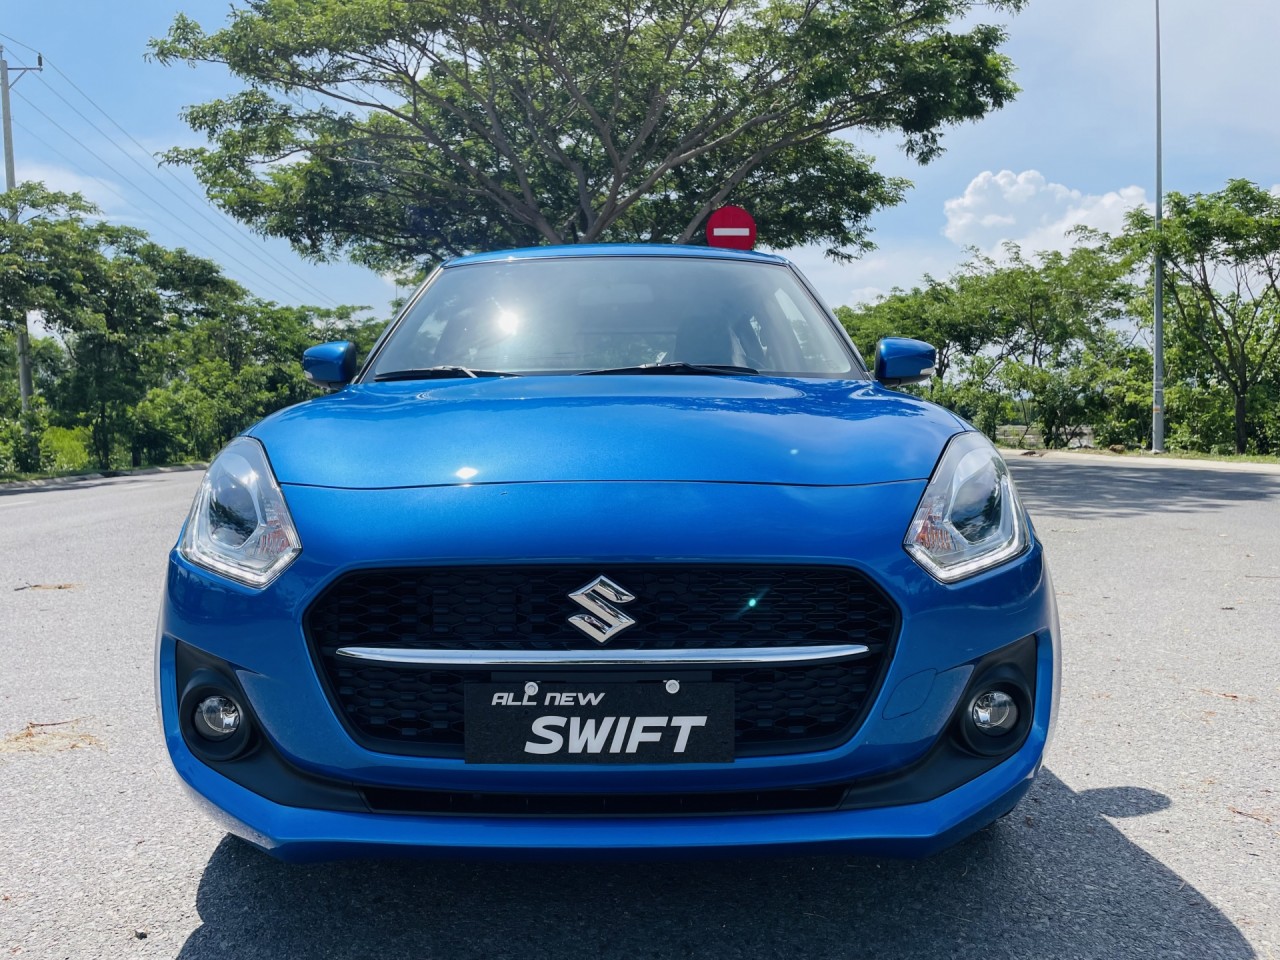 Suzuki Swift - xu hướng thời thượng mang hơi thở Châu Âu